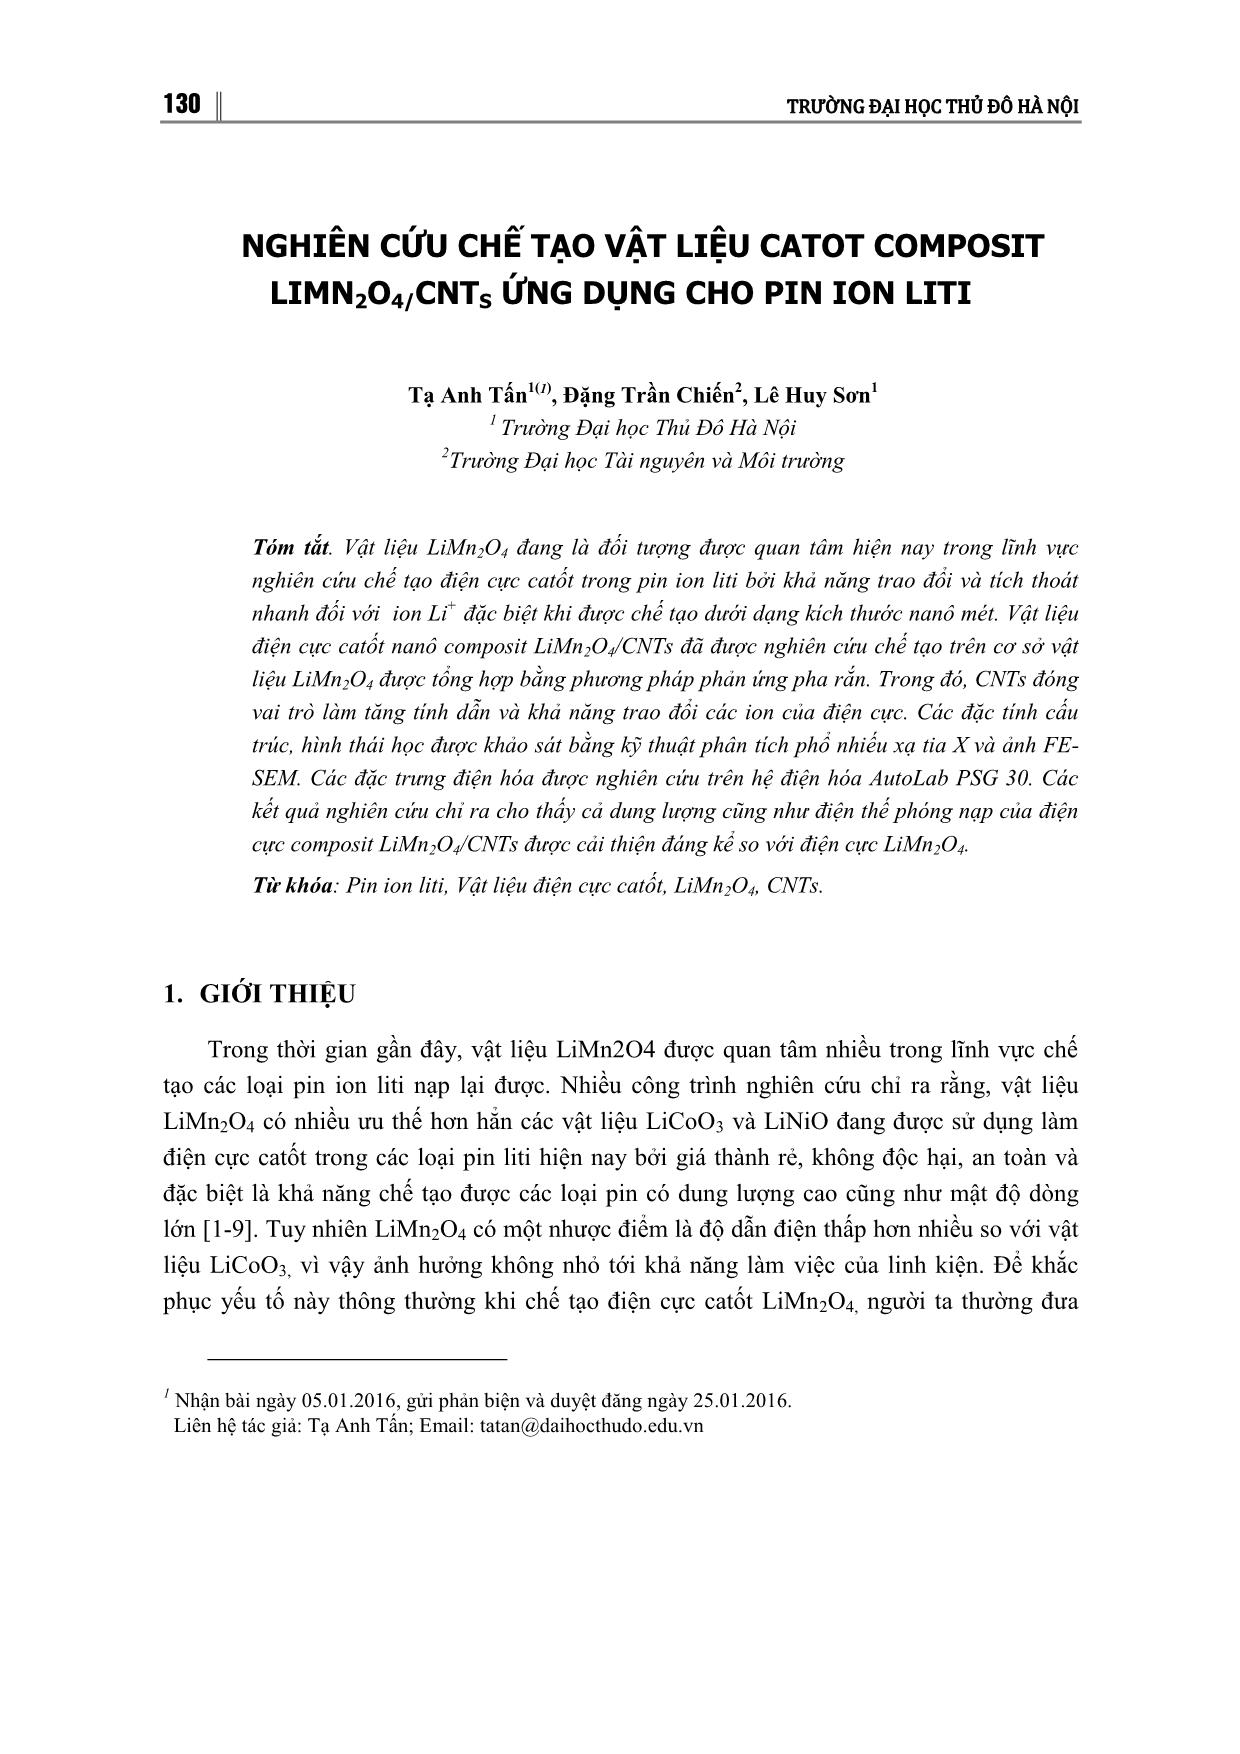 Nghiên cứu chế tạo vật liệu catot composit LIMN₂O₄/CNTˢ ứng dụng cho pin ion liti trang 1